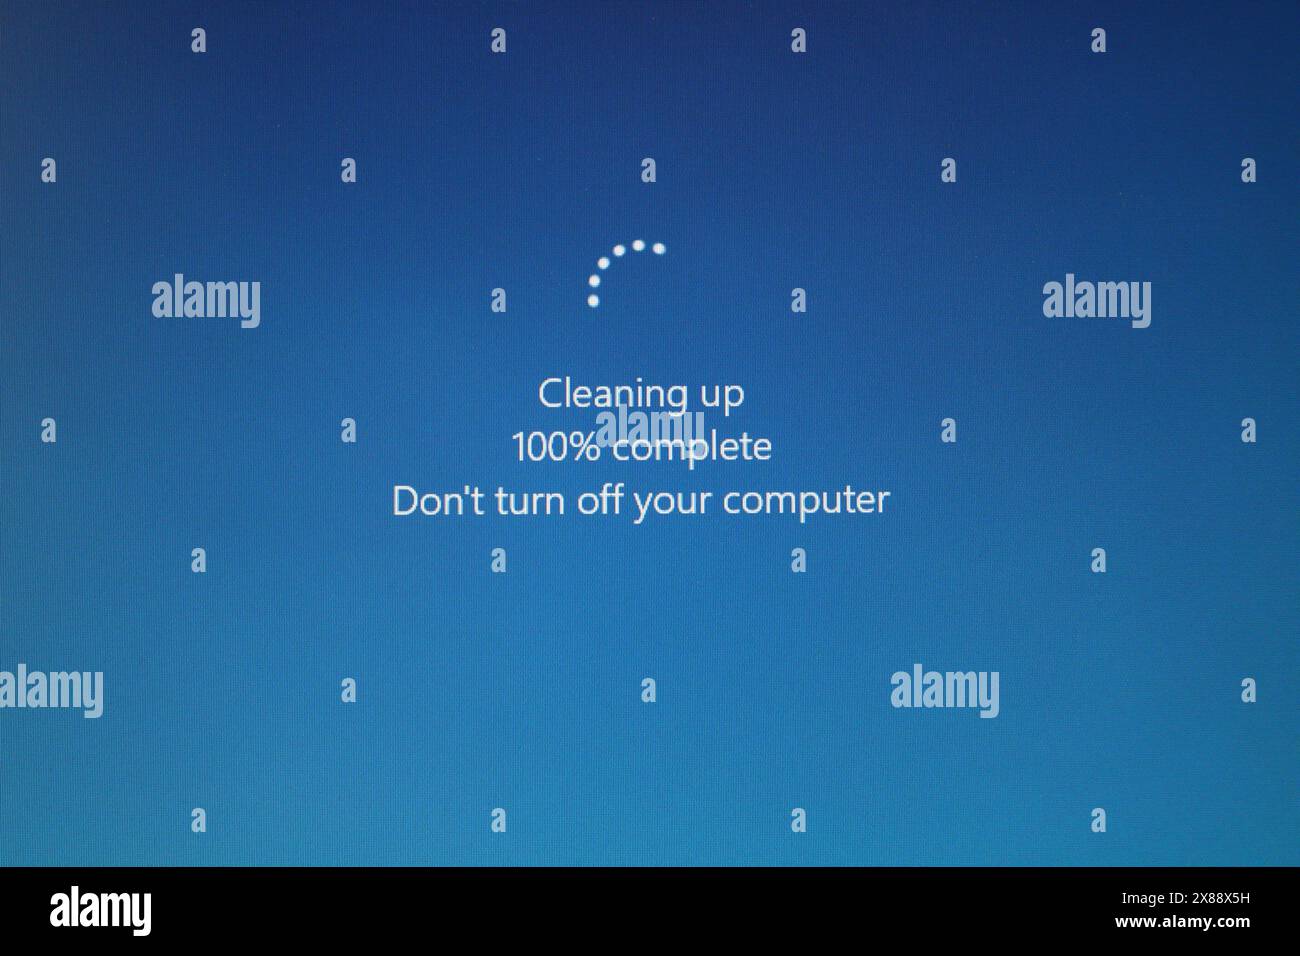 Capture d'écran Windows 10, nettoyage 100% terminé ne pas éteindre votre ordinateur après la mise à niveau de la technologie INFORMATIQUE Banque D'Images